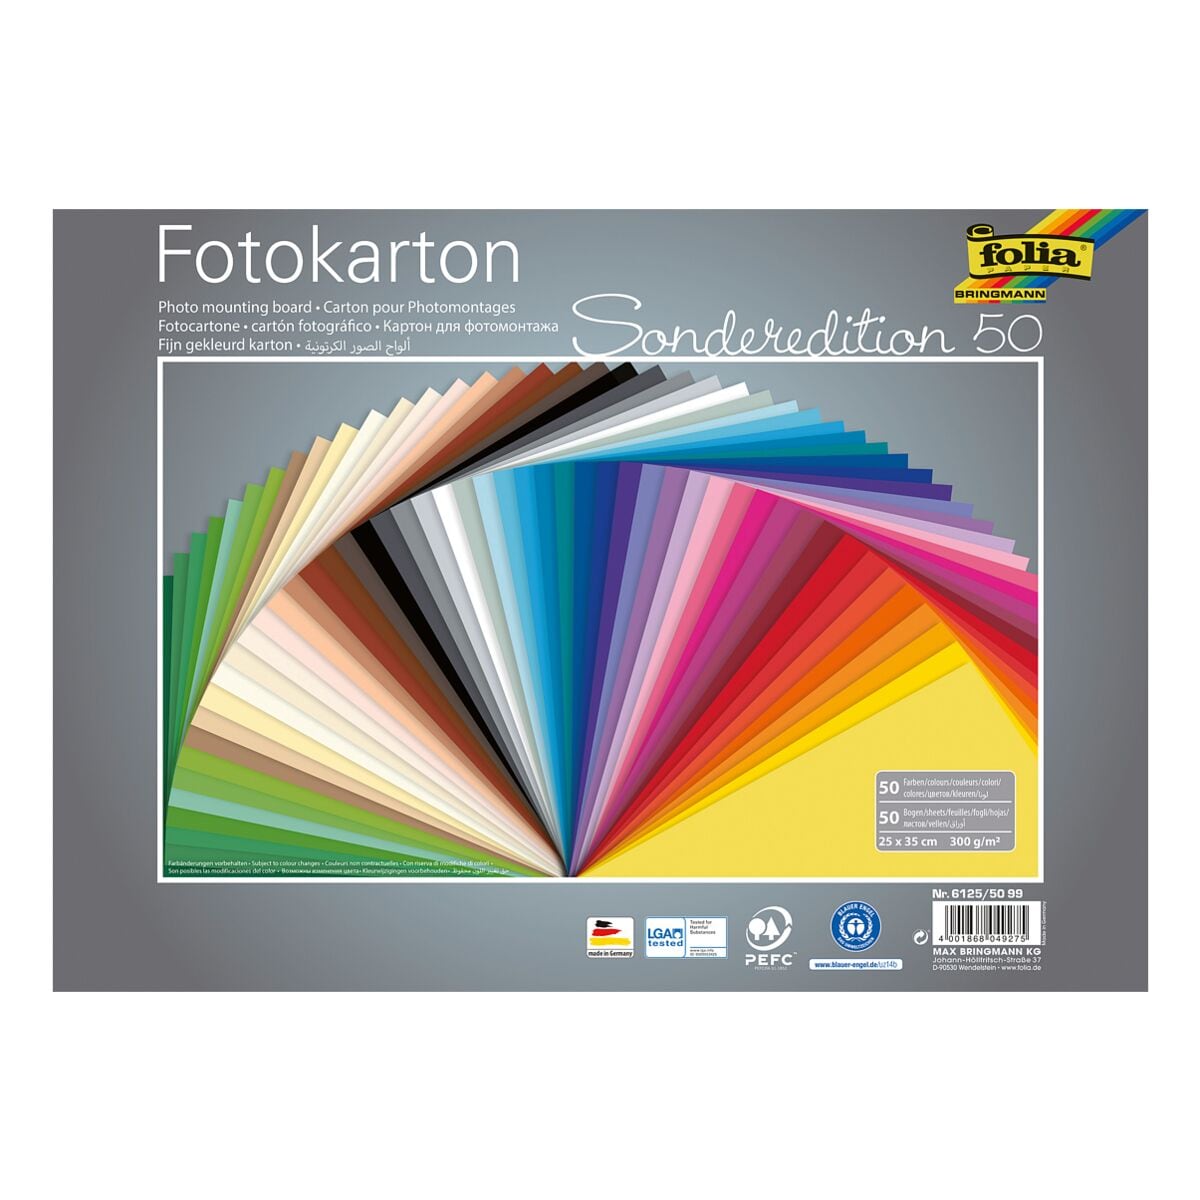 folia Fotokarton 300 g/m 50 Farben 25 x 35 cm 50 Blatt